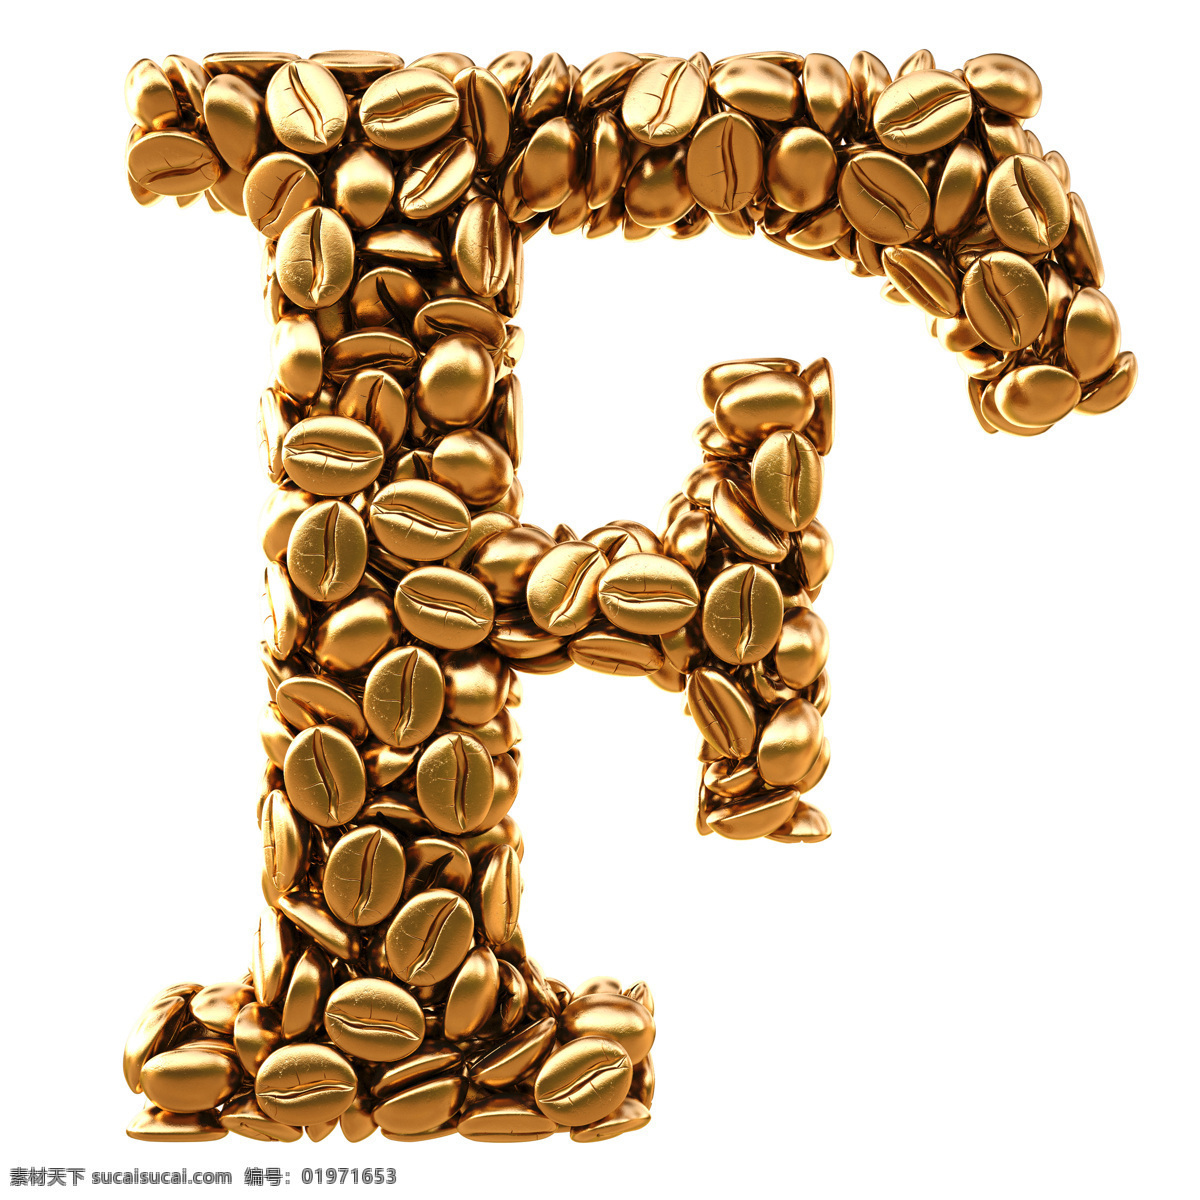 金色 咖啡豆 组成 字母 f 金色元素 重金属 质感金色 金融货币 商务金融